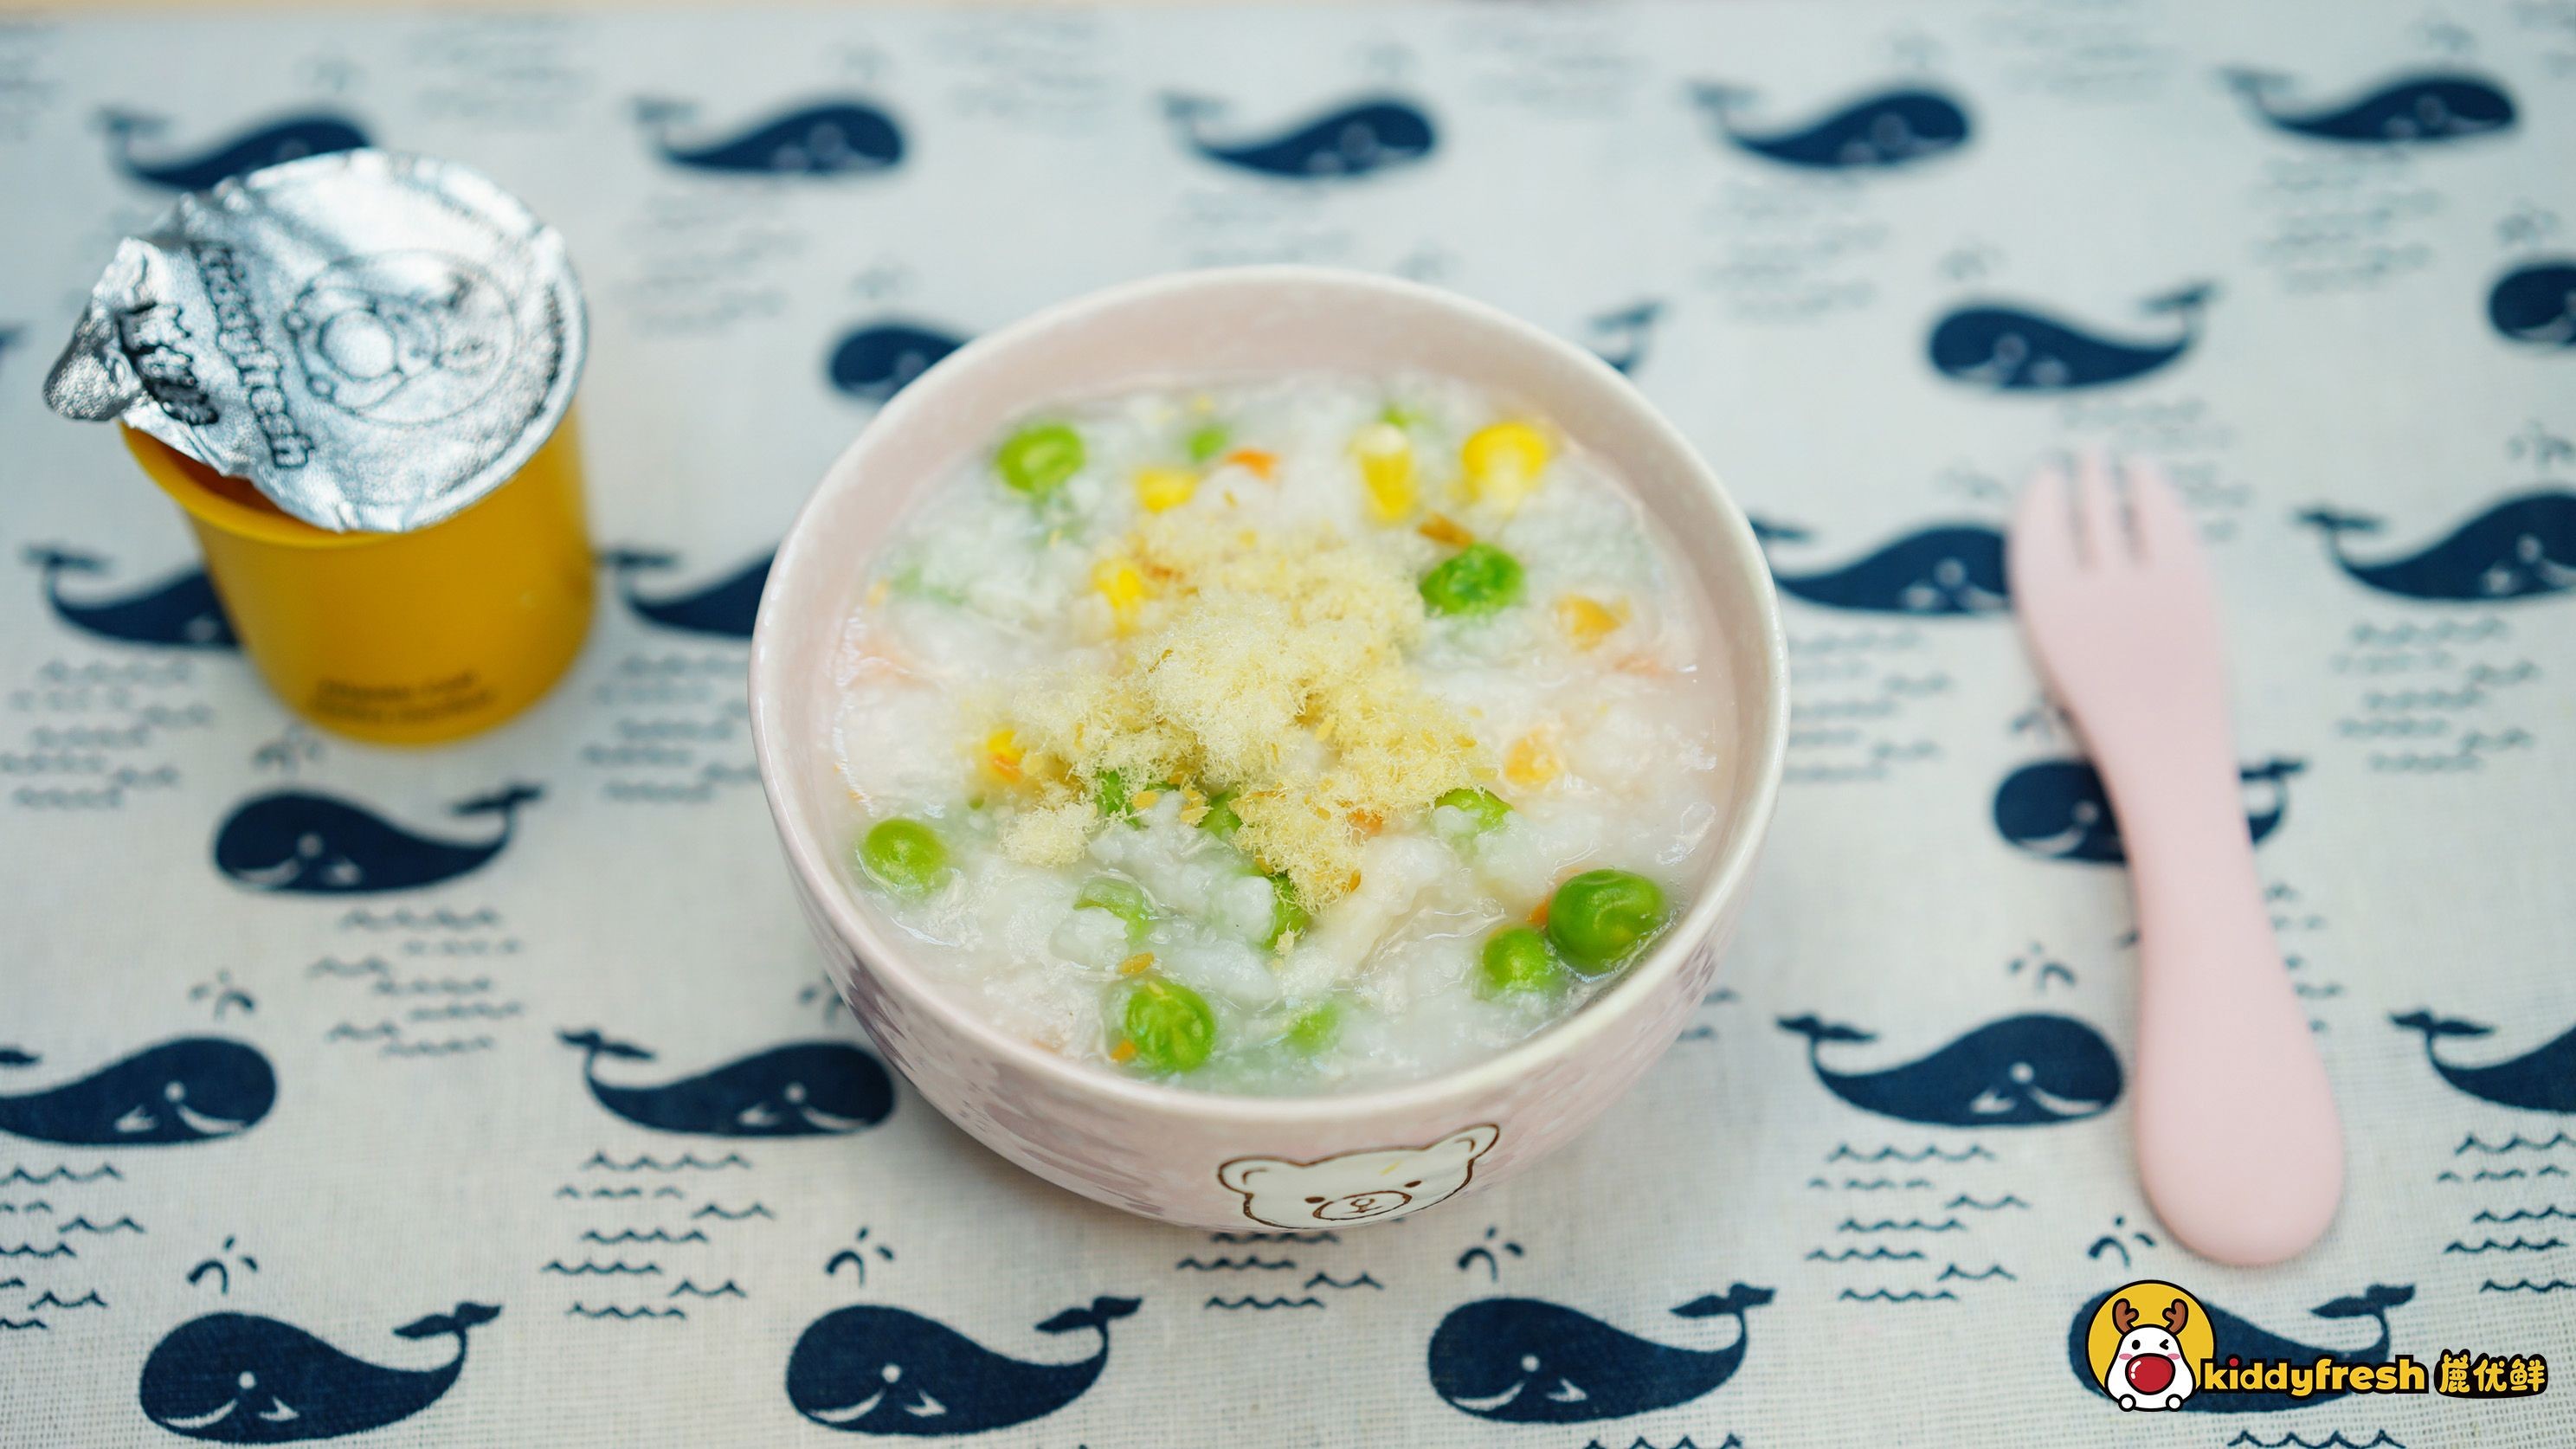 Cod and Vegetable Porridge recipe